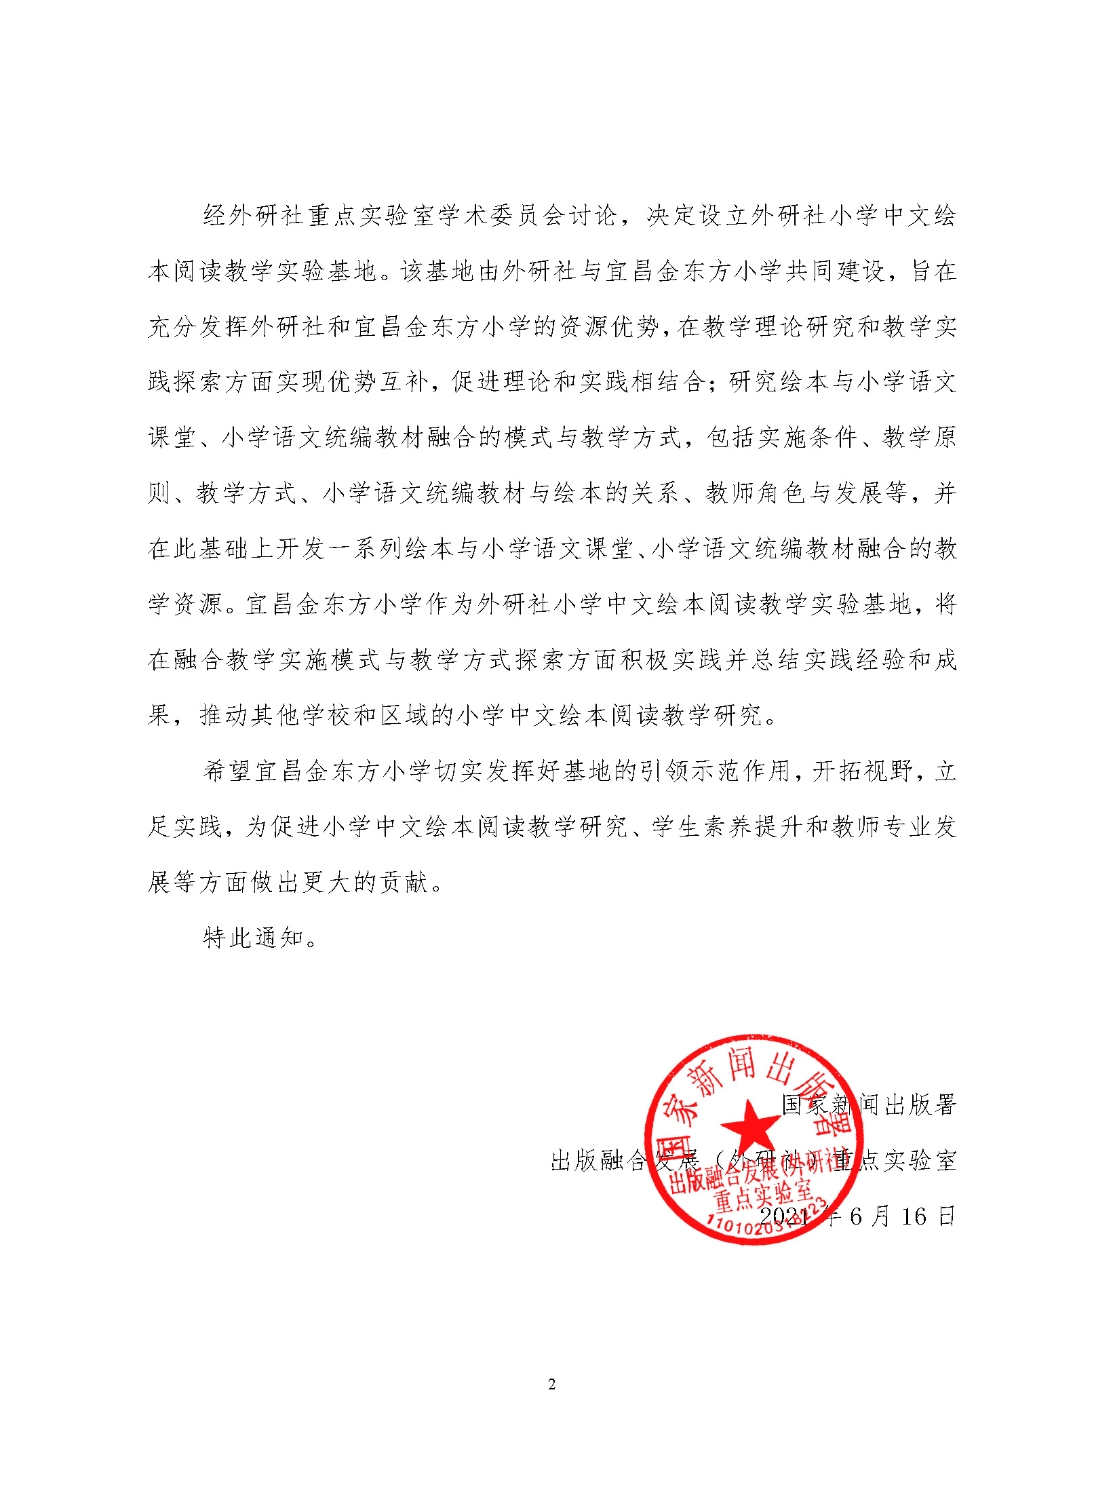 关于设立外研社小学中文绘本阅读教学基地通知（202106）_页面_2